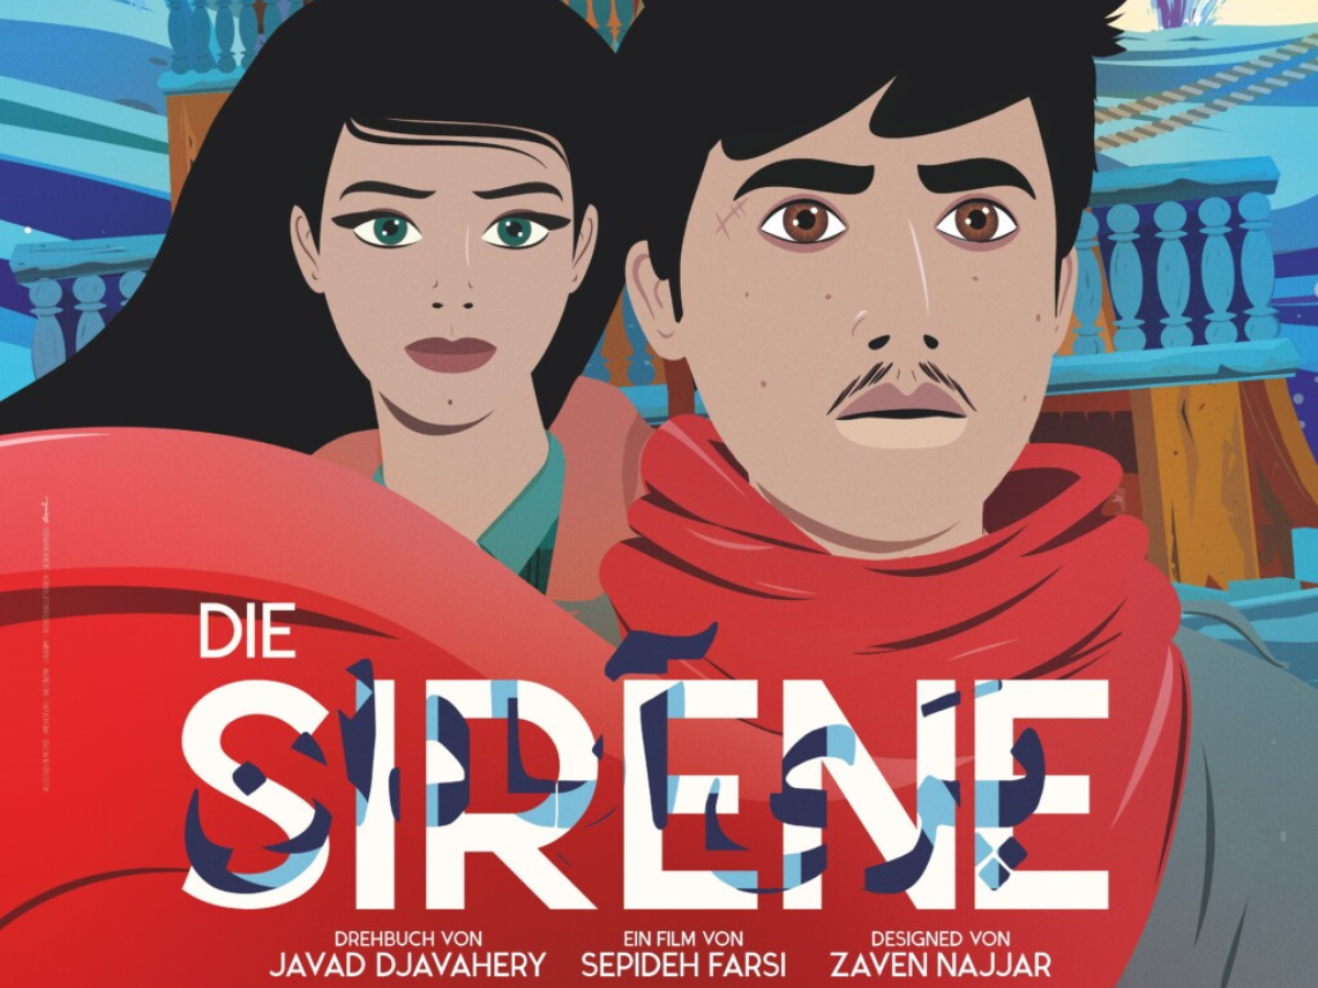 Film and Talk: La Sirène (The Siren)